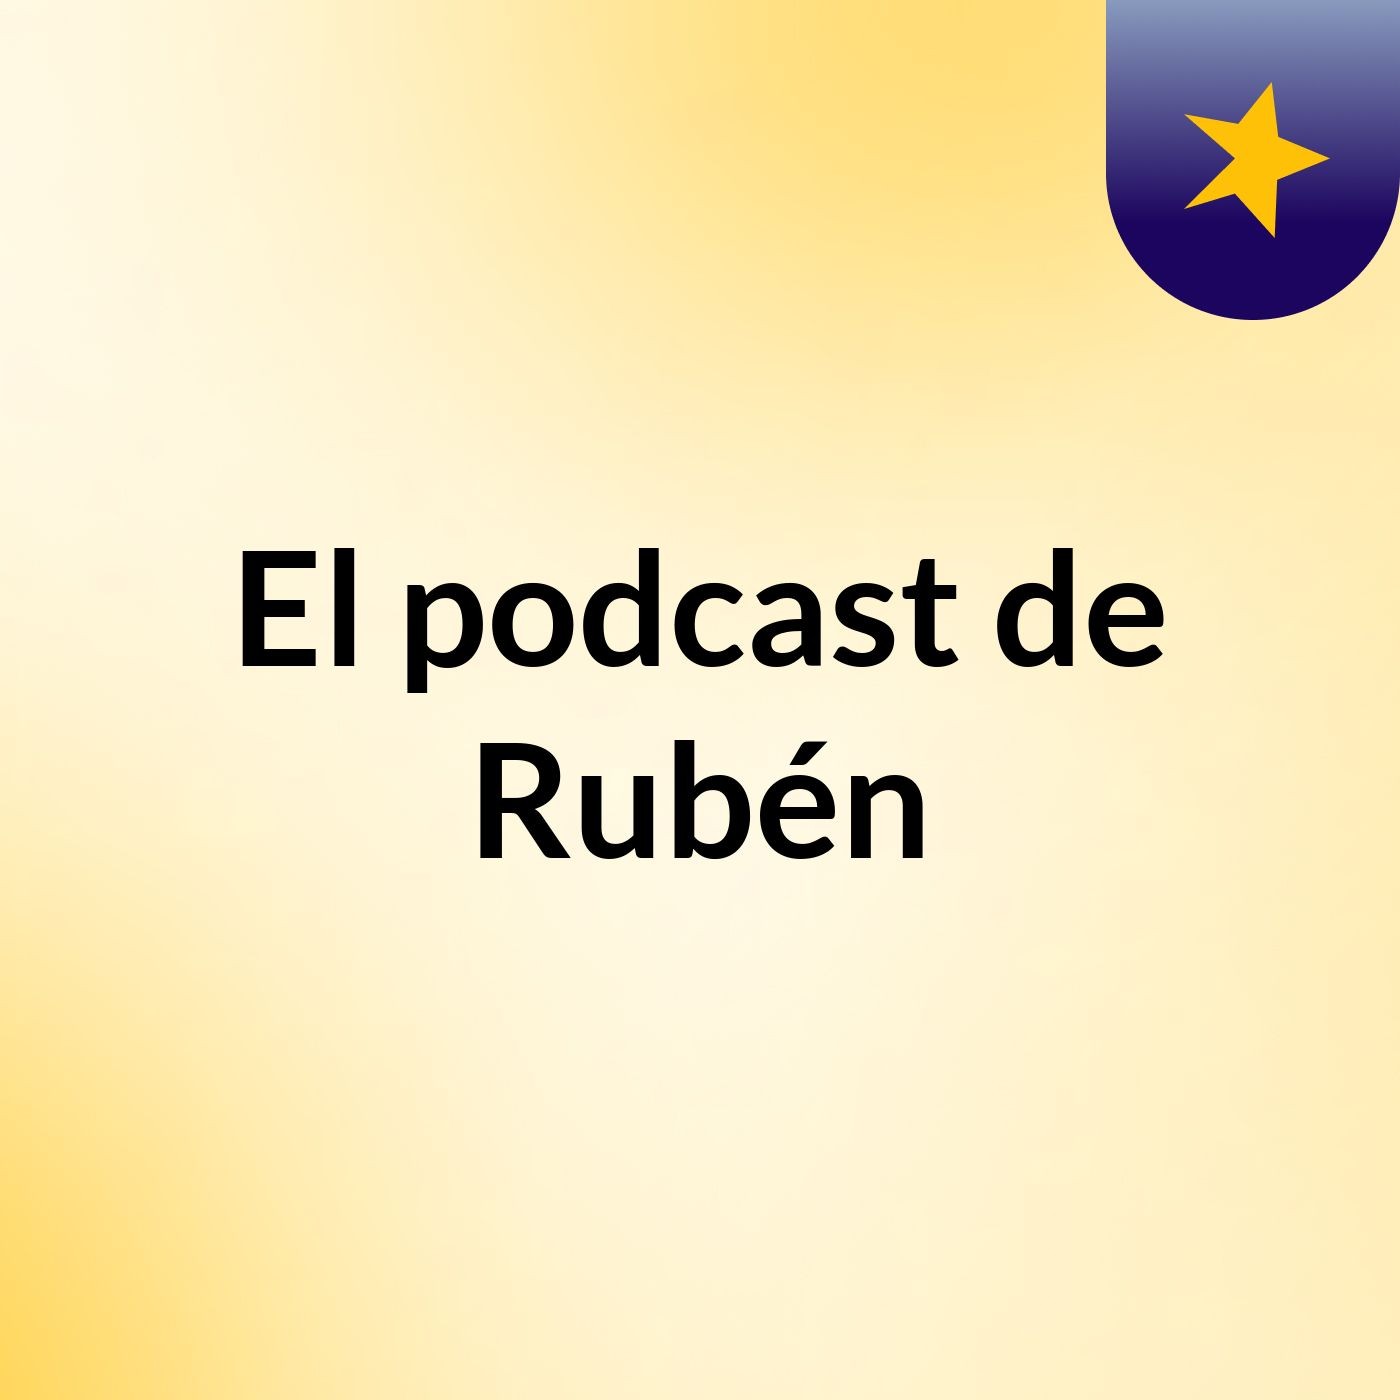 Episodio 4 - El podcast de Rubén